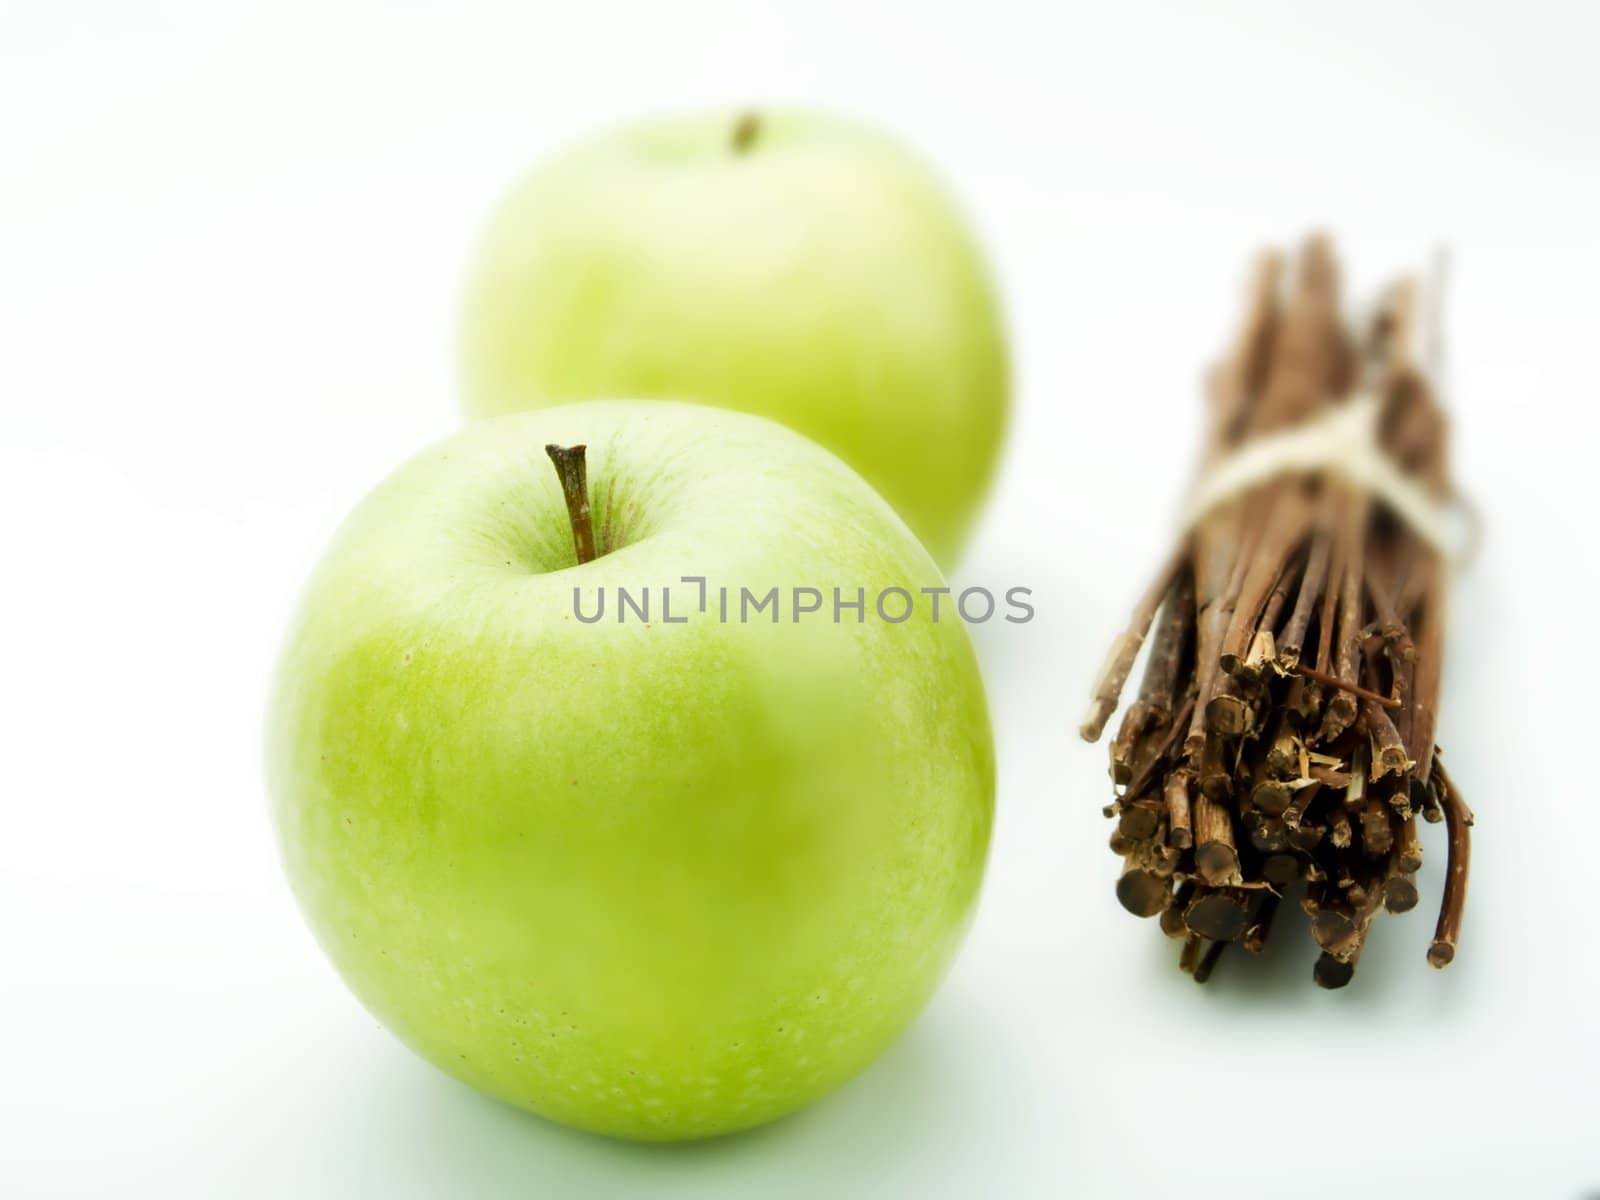 Green apples by henrischmit